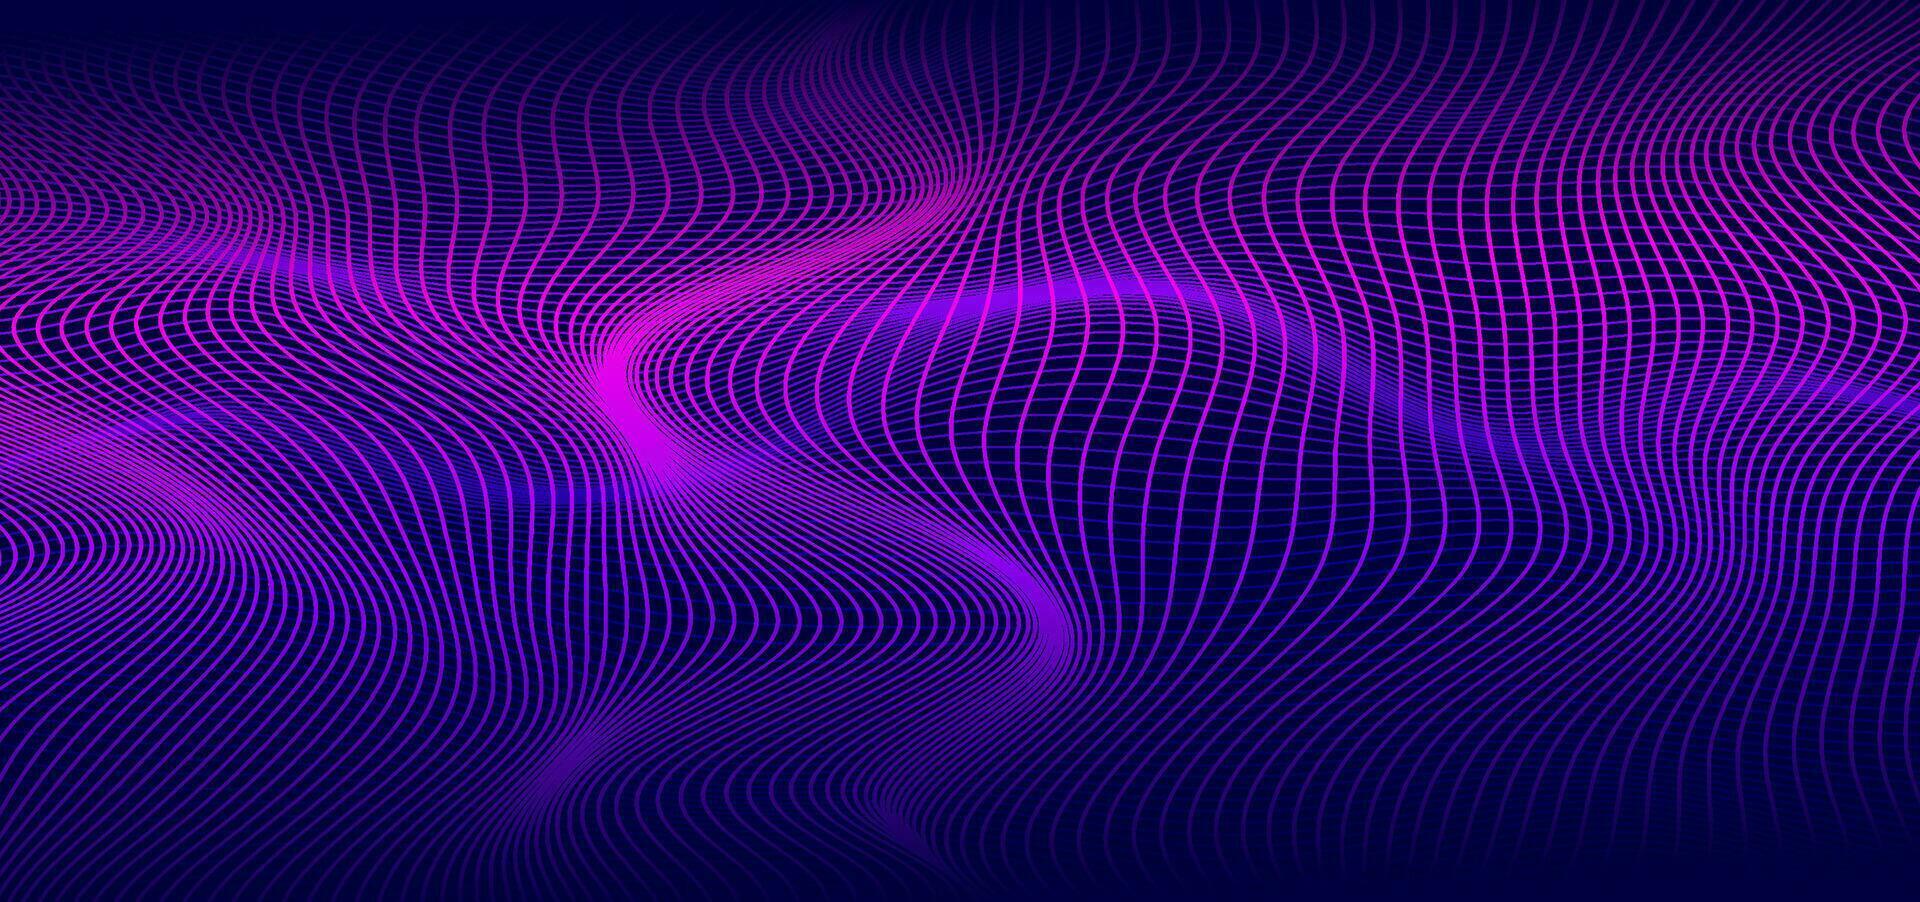 abstrakt släta tunna linjer på mörkblå bakgrund. futuristisk teknologidesignbakgrund med lila och blå gradientövergång. vektor